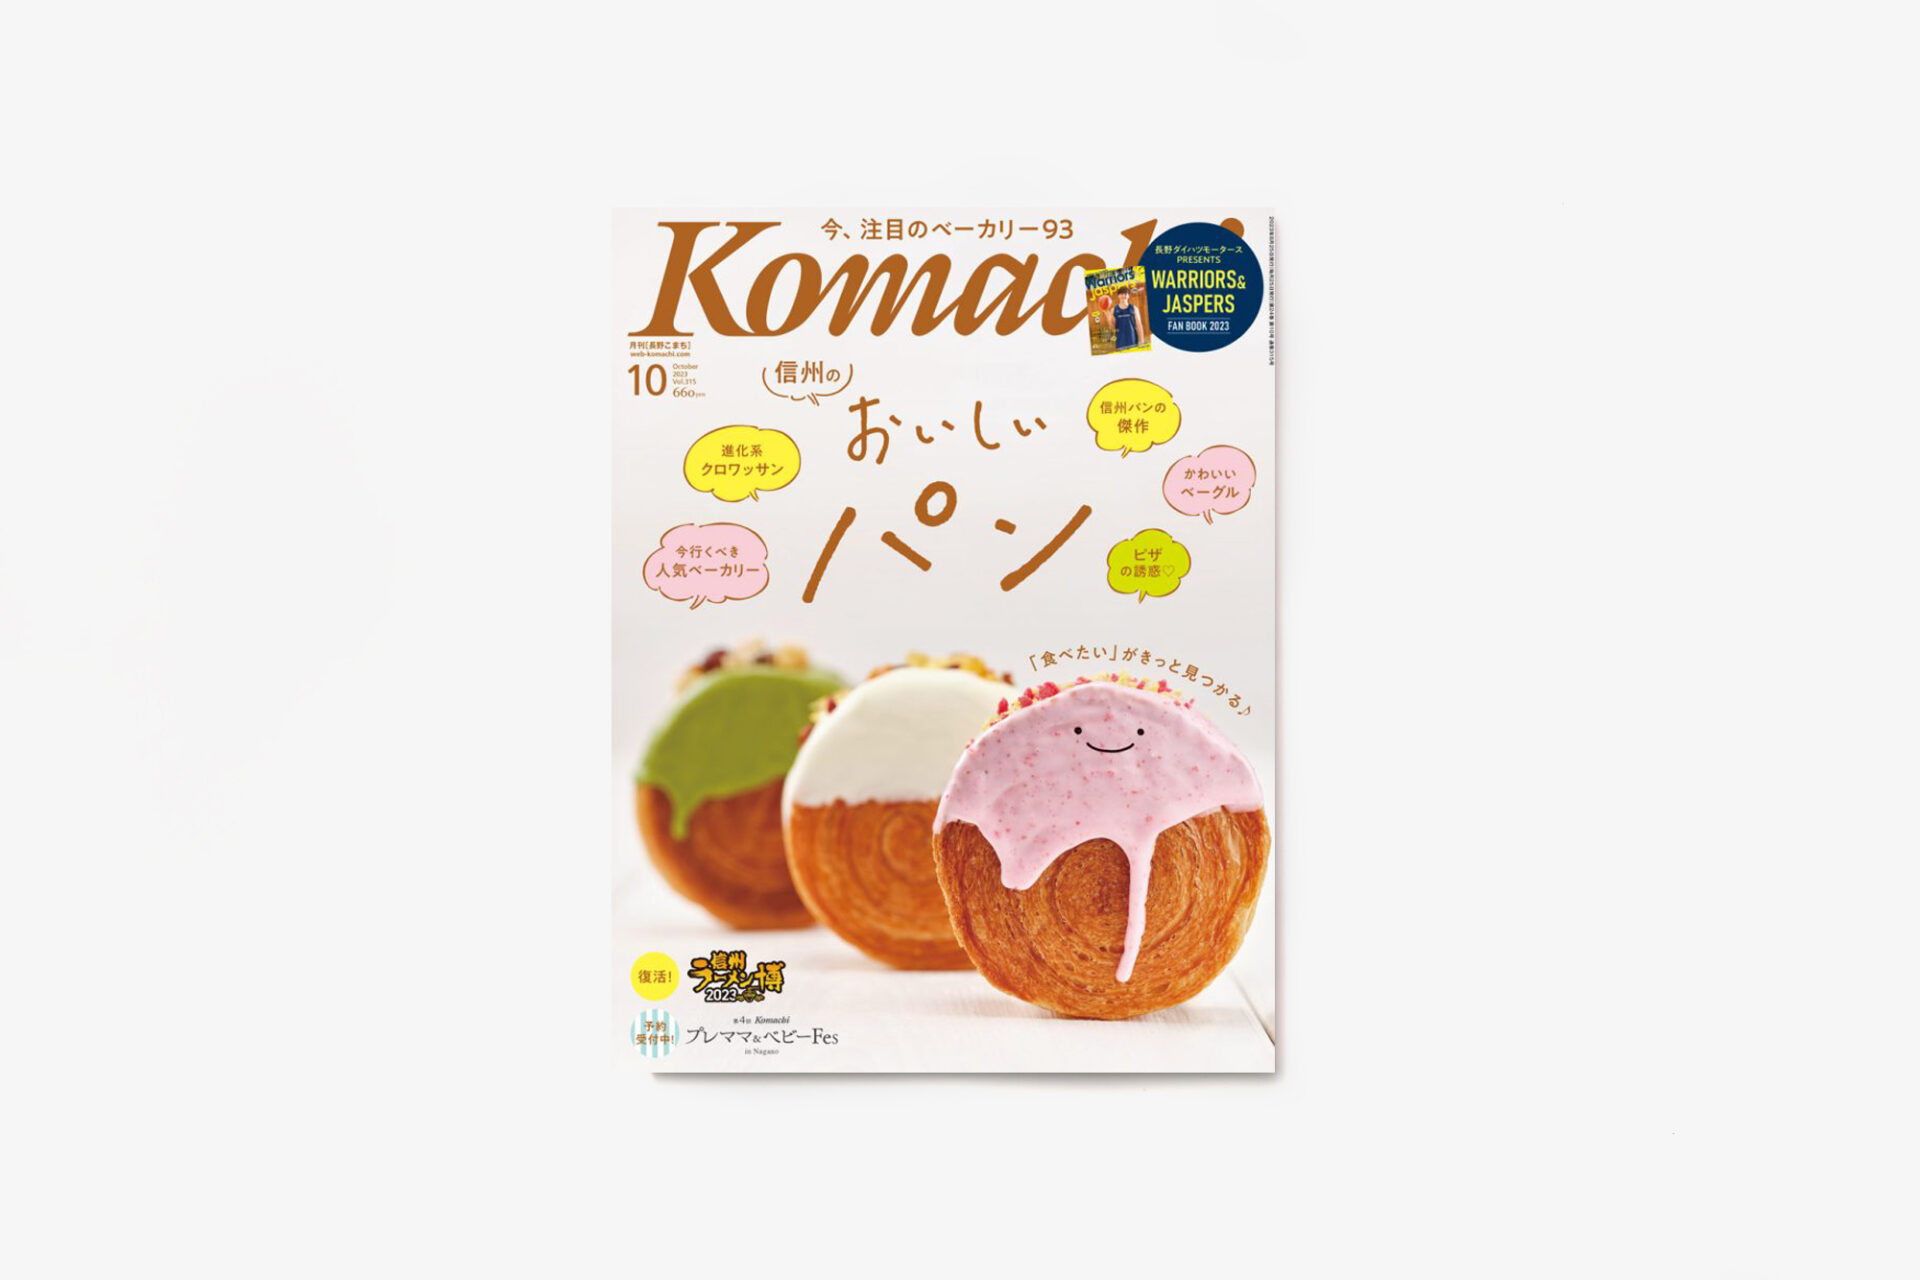 【メディア掲載】パンと日用品の店わざわざが長野komachi10月号に掲載されました。